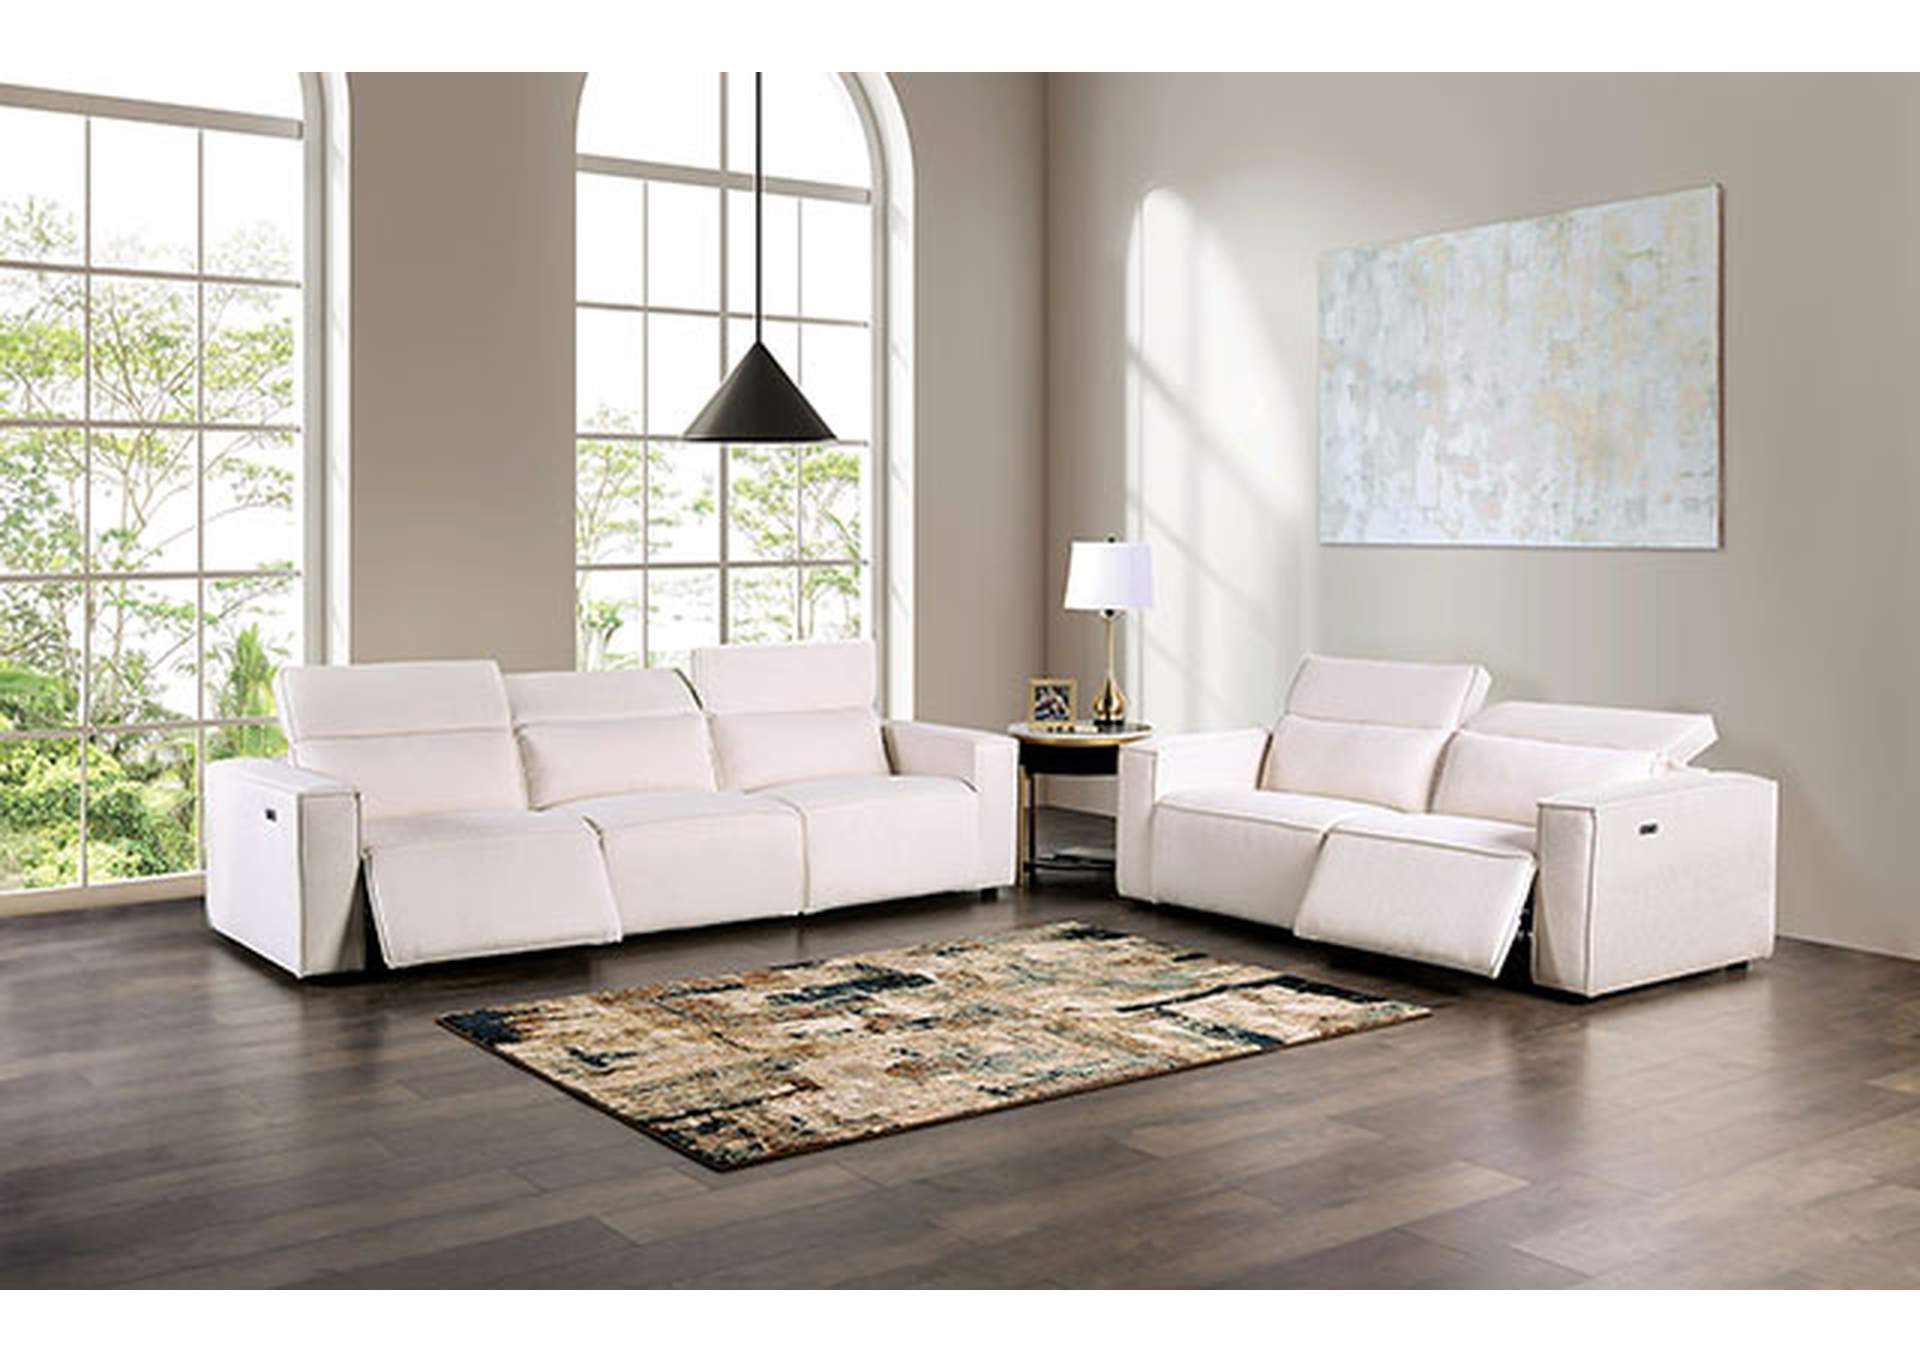 Treharris Power Sofa,Furniture of America